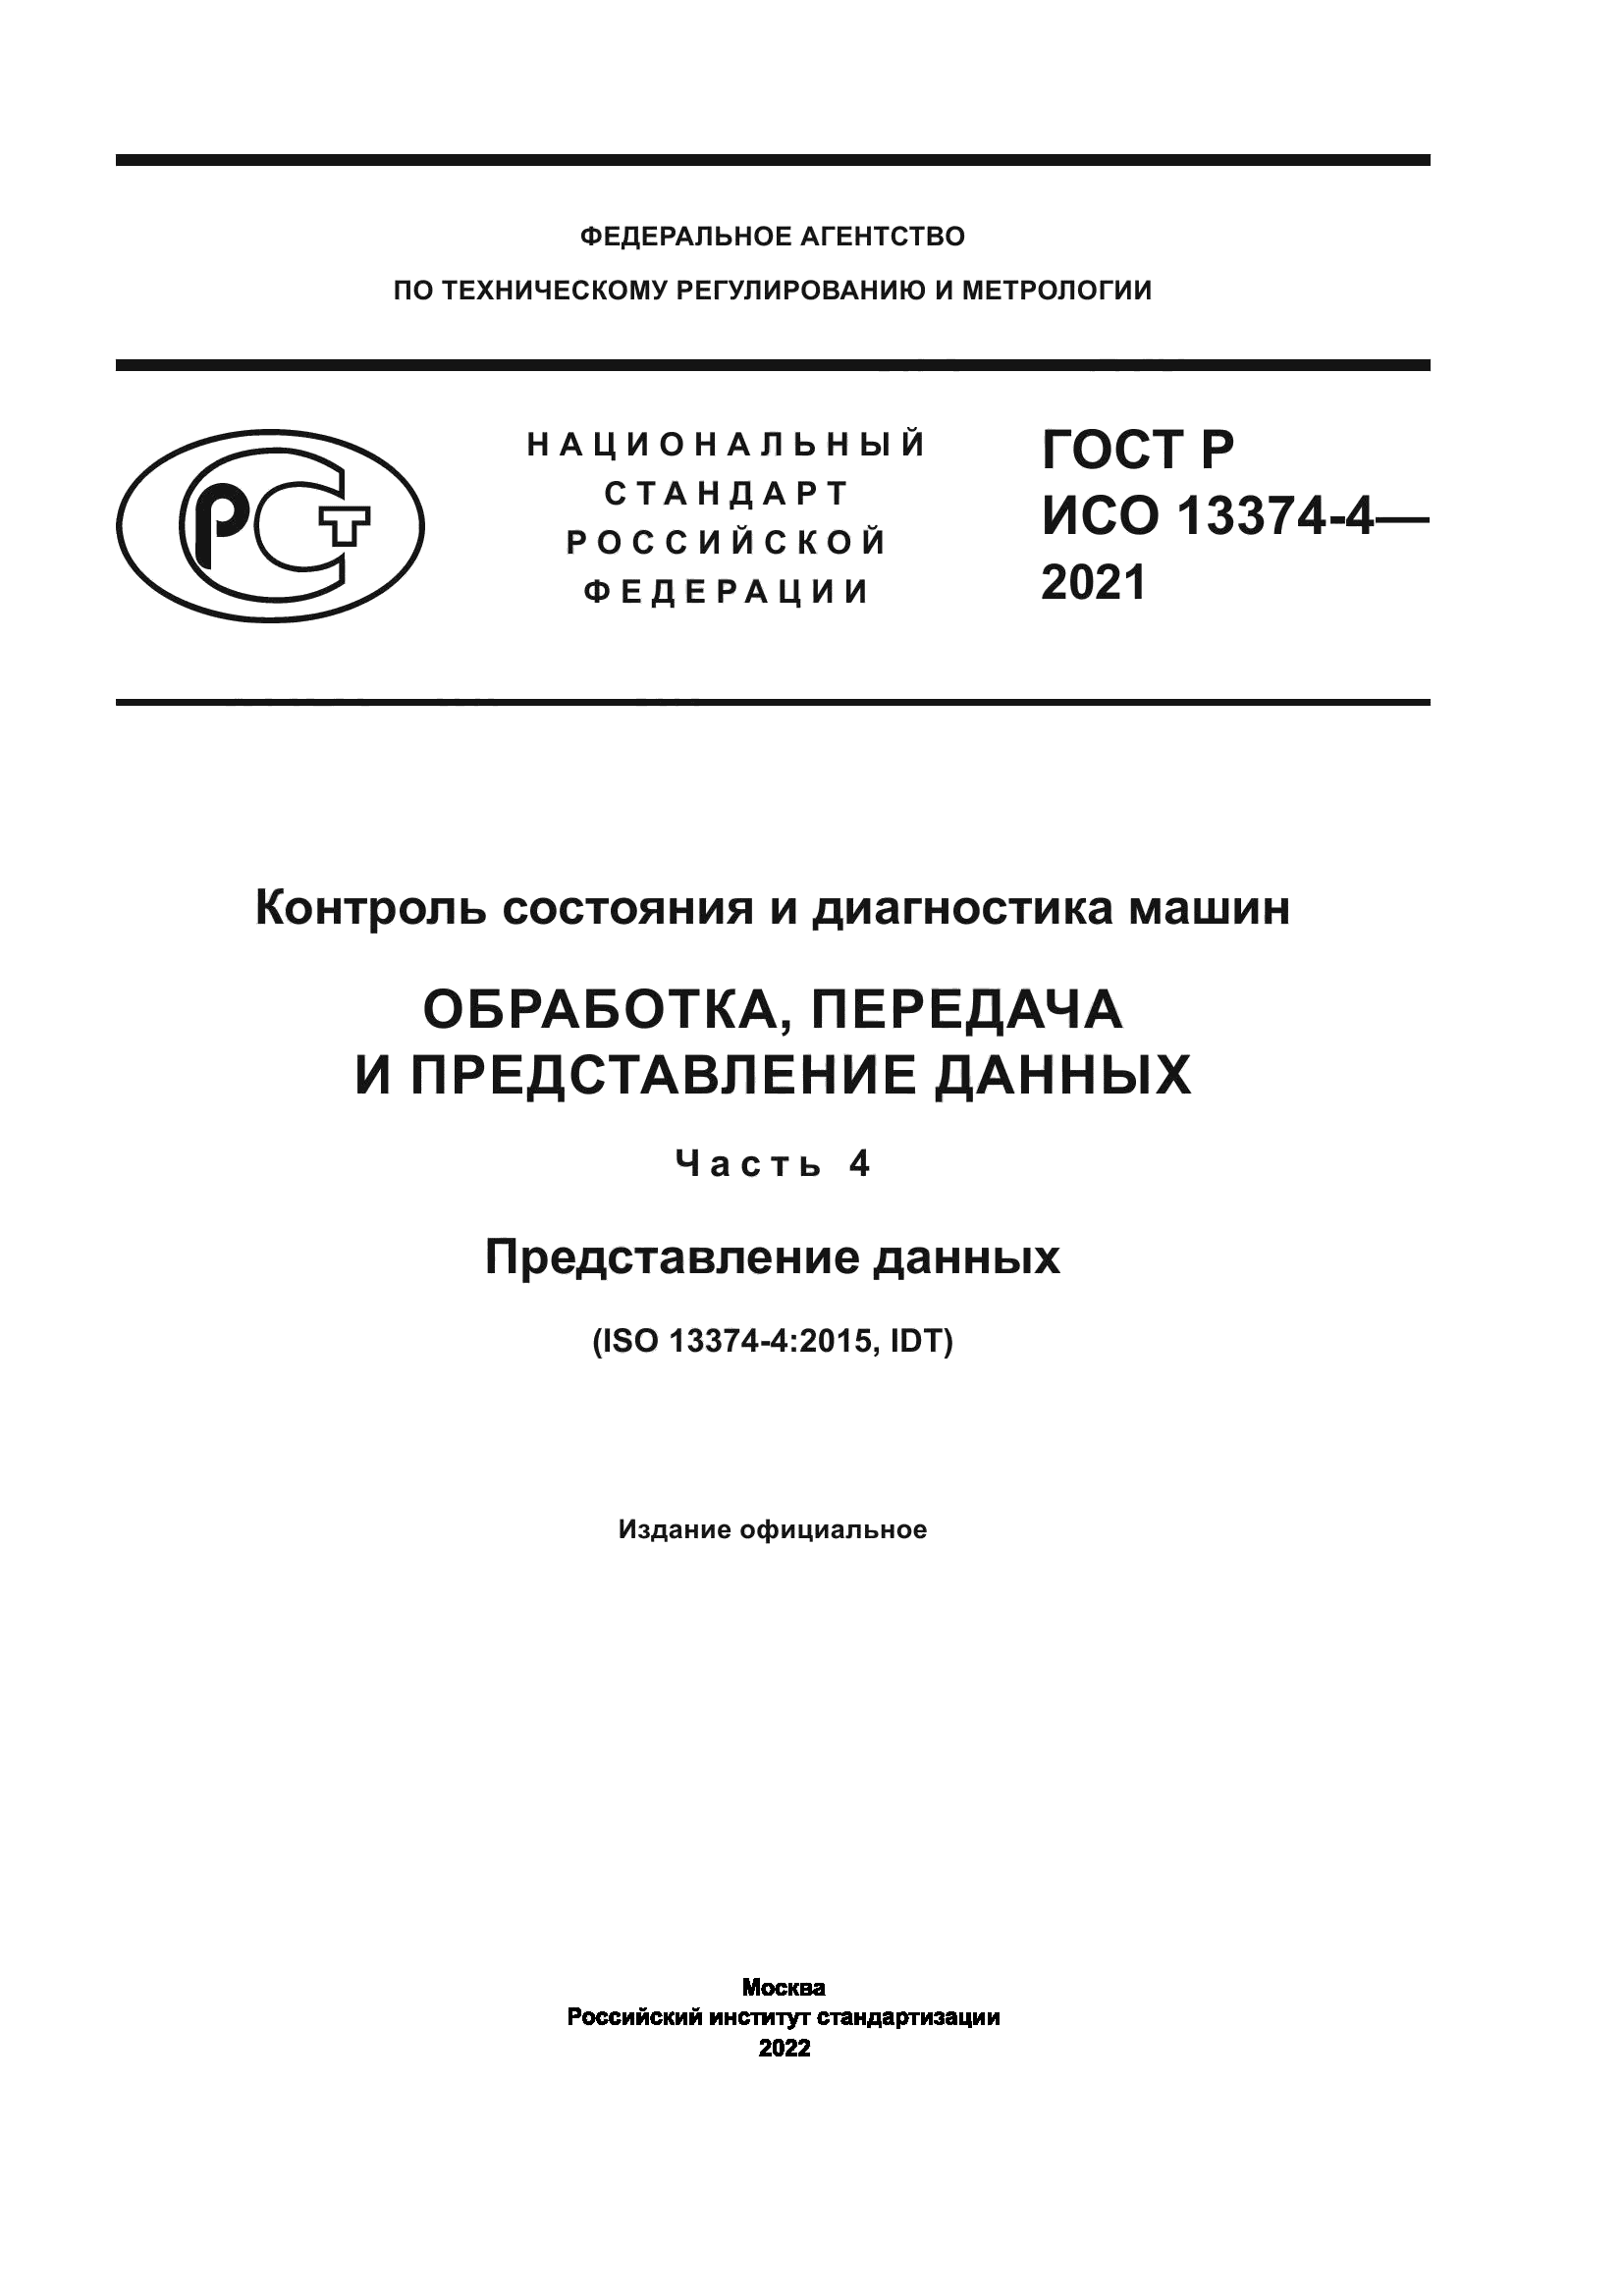 ГОСТ Р ИСО 13374-4-2021